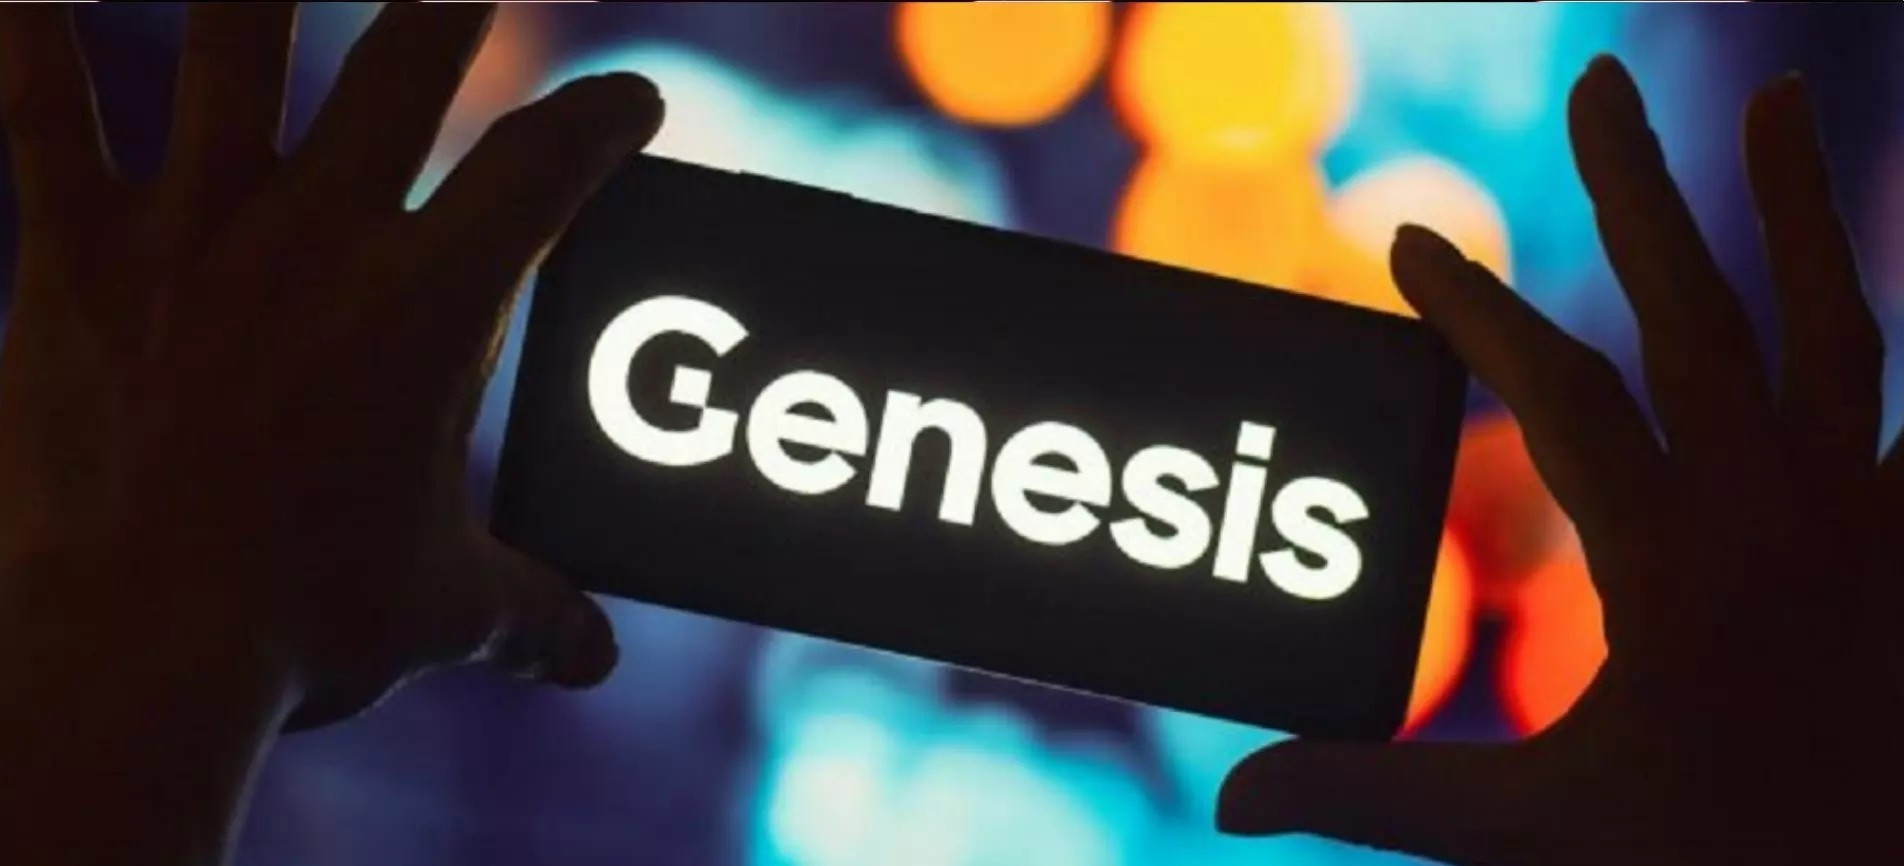 Genesis достигла соглашения с SEC и выплатит компенсацию в размере 21 миллиона долларов